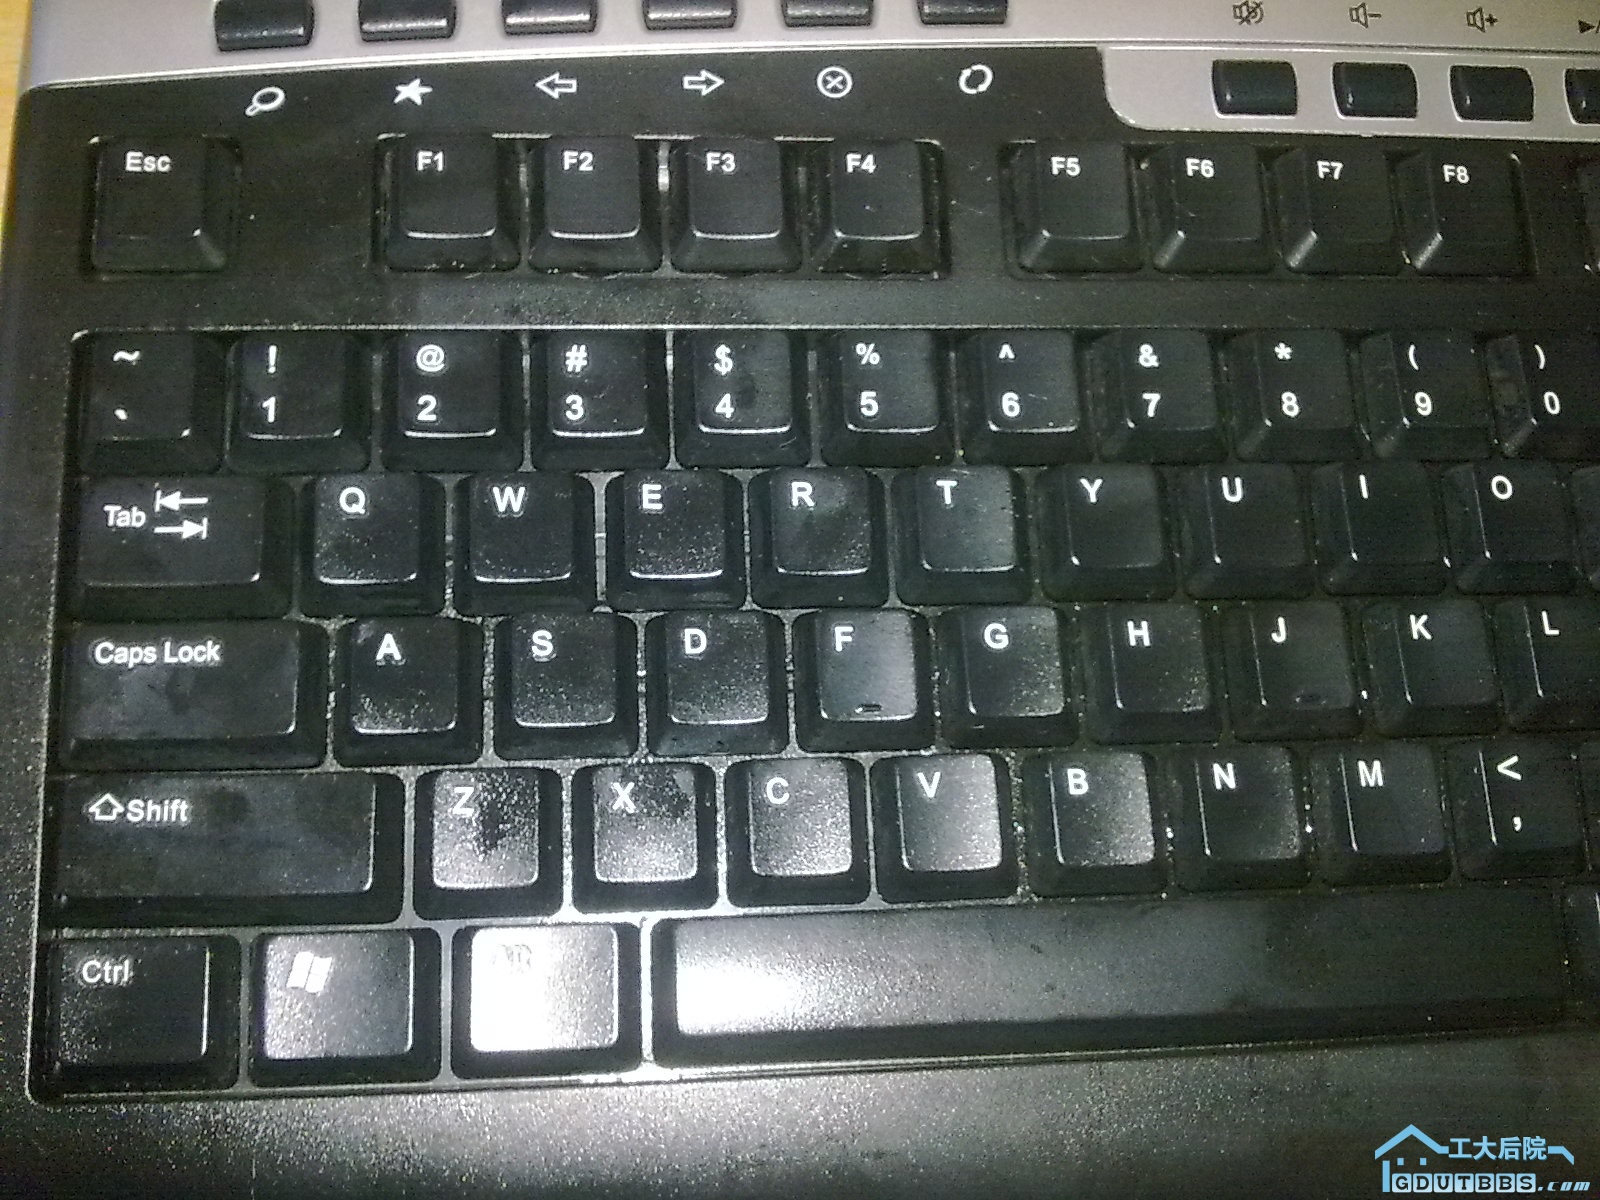 罗技标准键盘，主要毛病是按键弹起无力，貌似是因为油性液体侵入